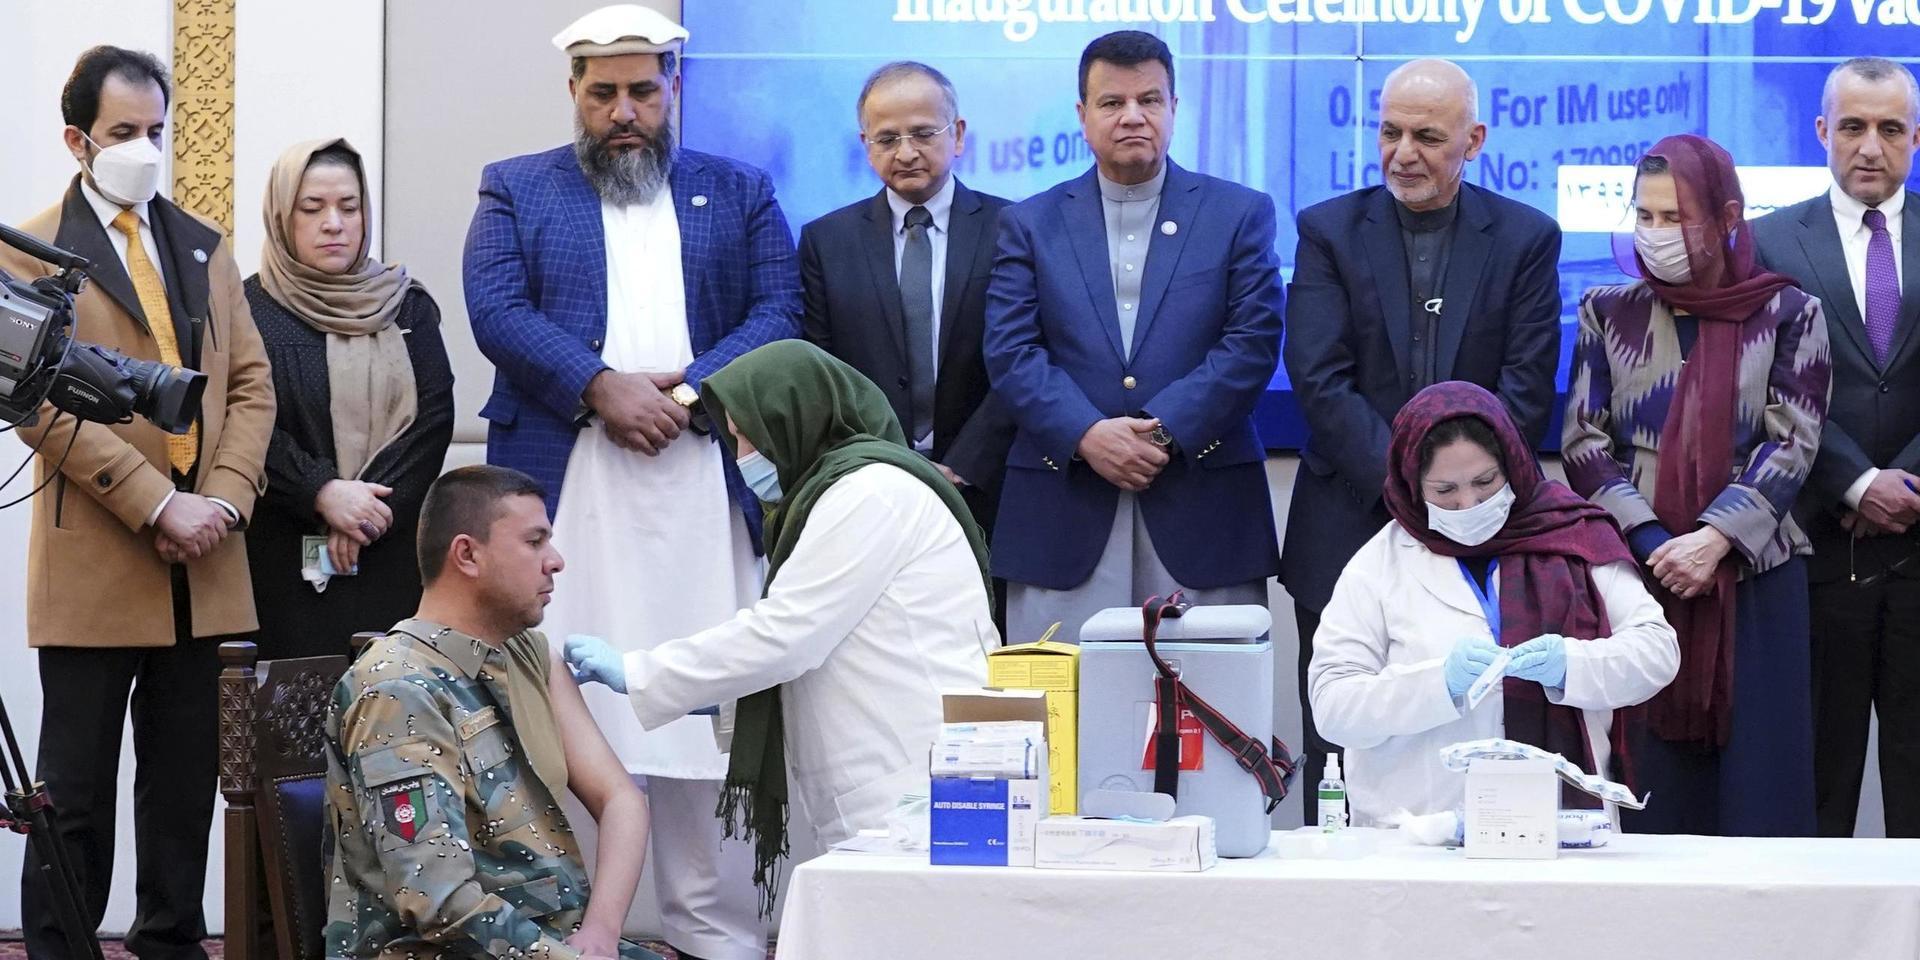 De första sprutorna med covidvaccin ges i Afghanistan, vid en ceremoni i presidentpalatset i Kabul. Tredje person från höger, som tittar på injiceringen, är president Ashraf Ghani.